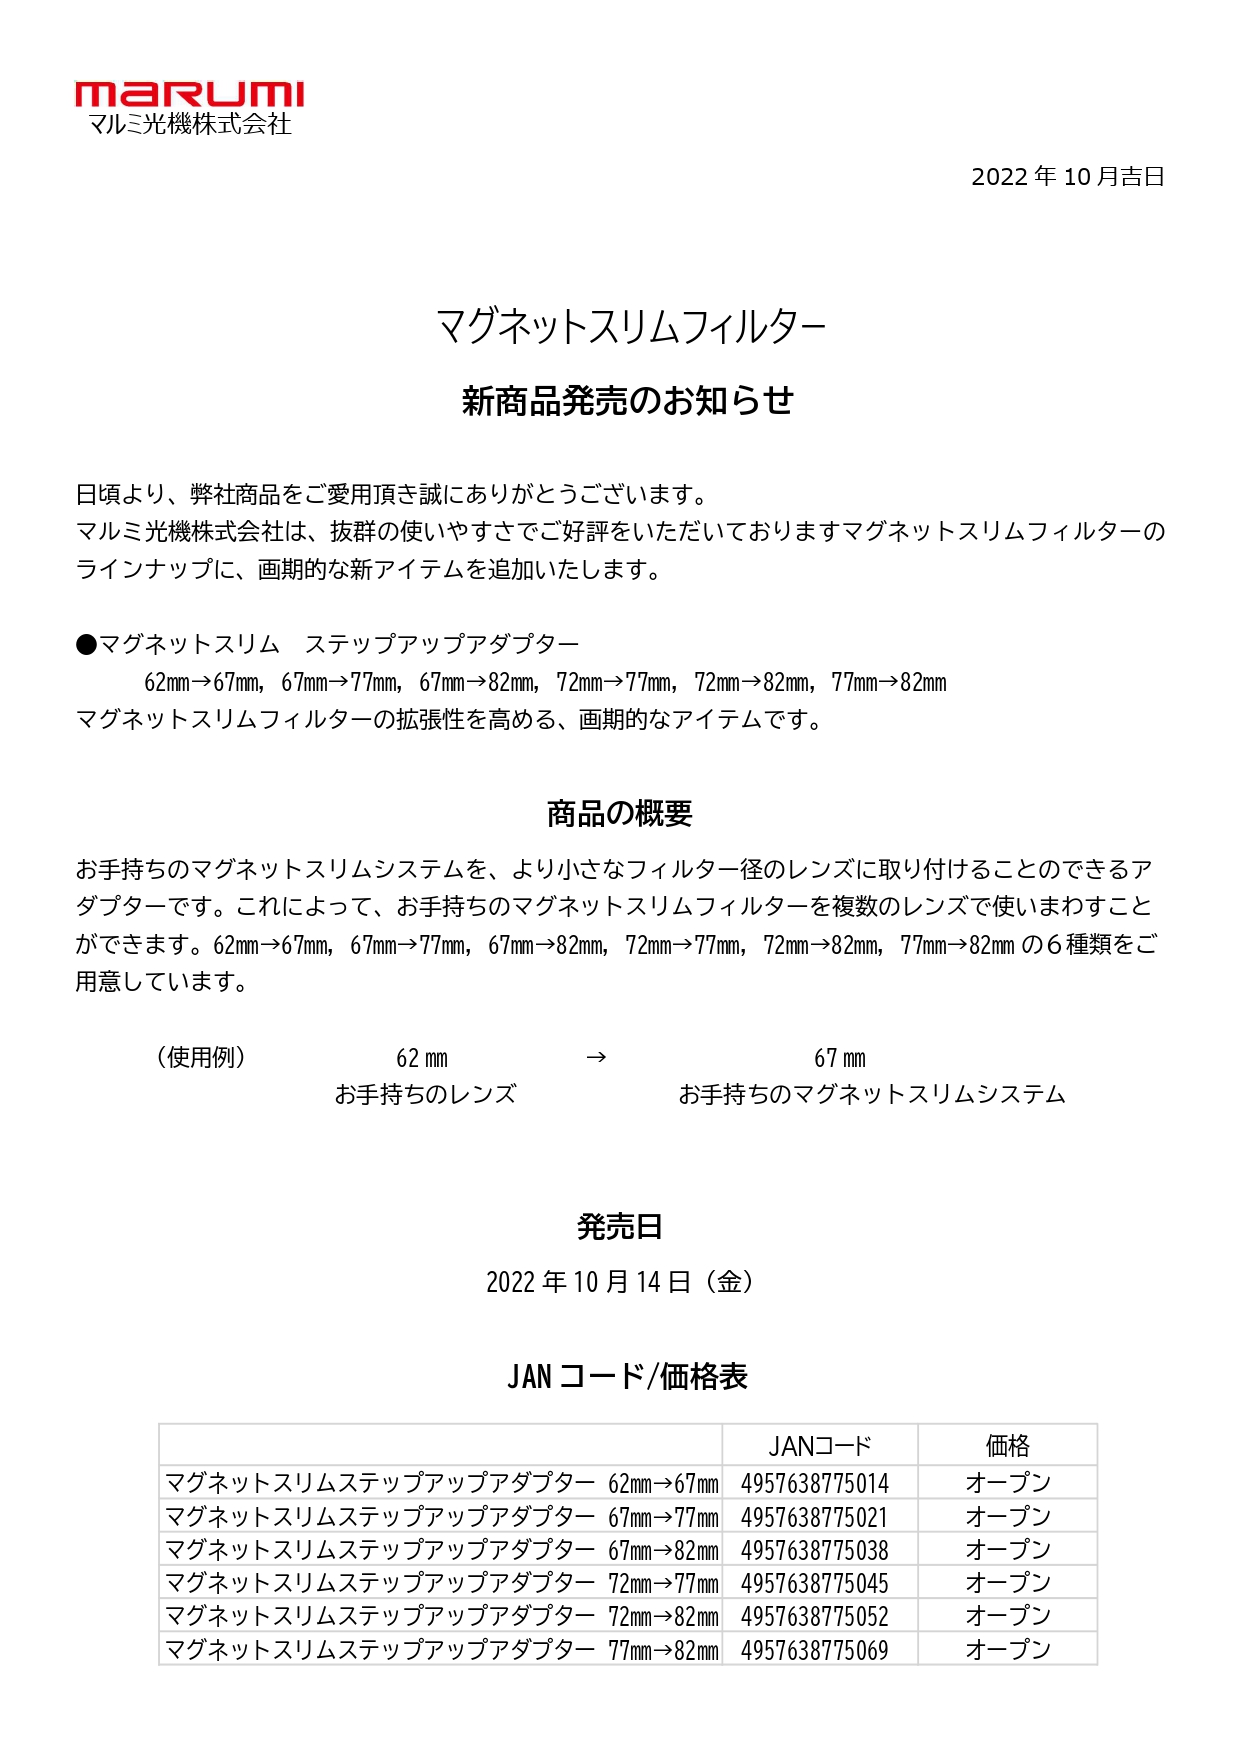 ニュースリリース<br>2022/10/14(金)<br>マグネットステップアダプターを発売